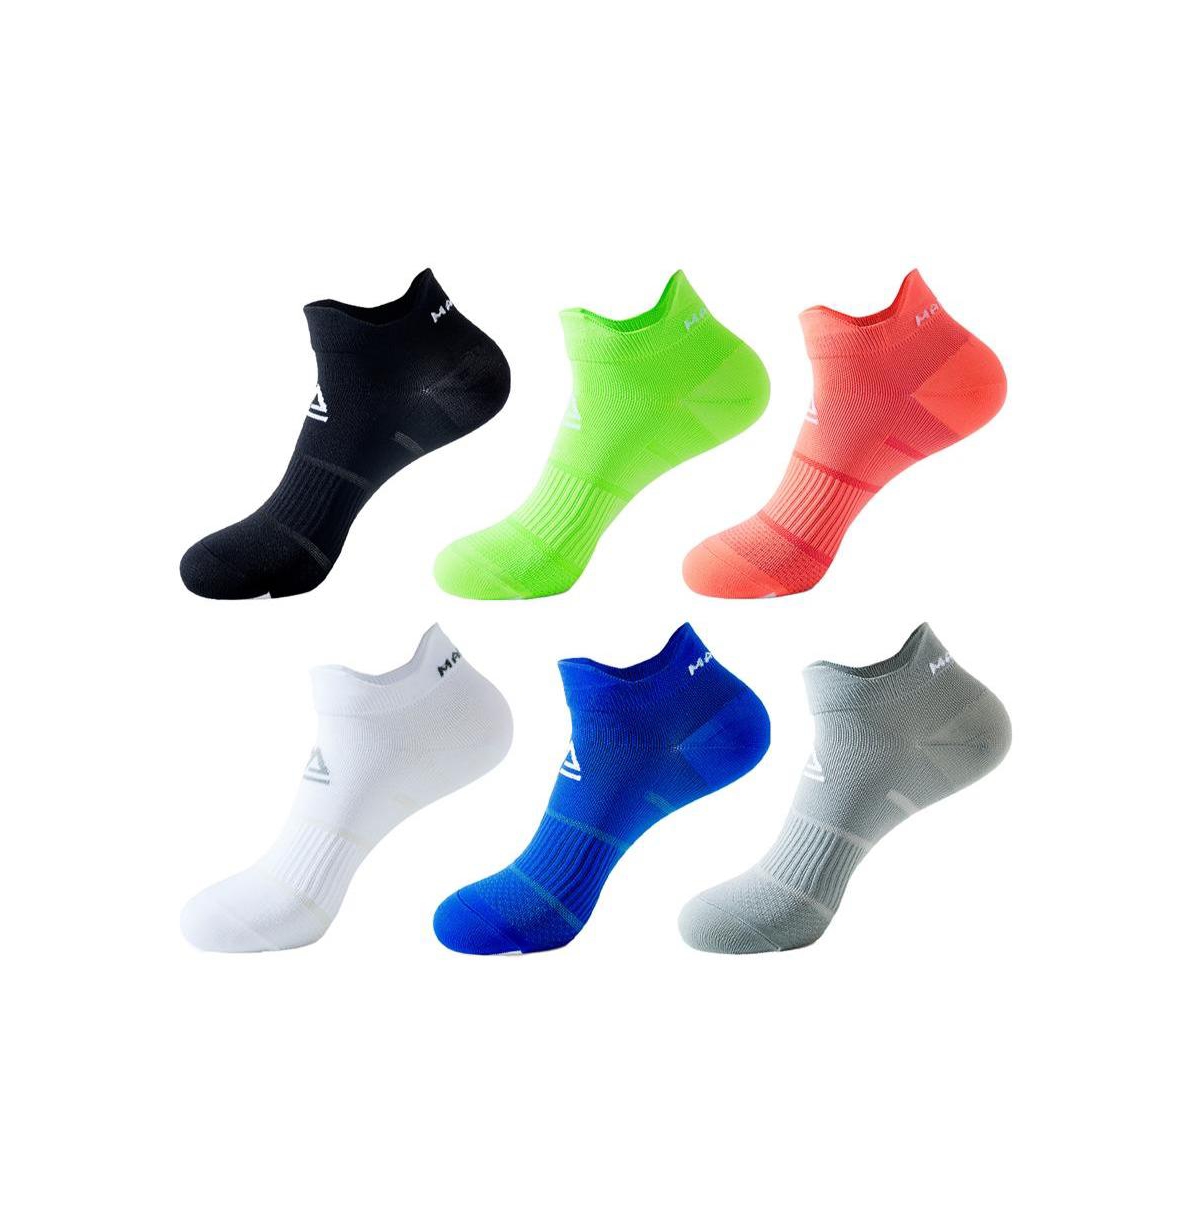 Brave man Unisex 6-Pack Compression Wellness Ankle Socks - Assort